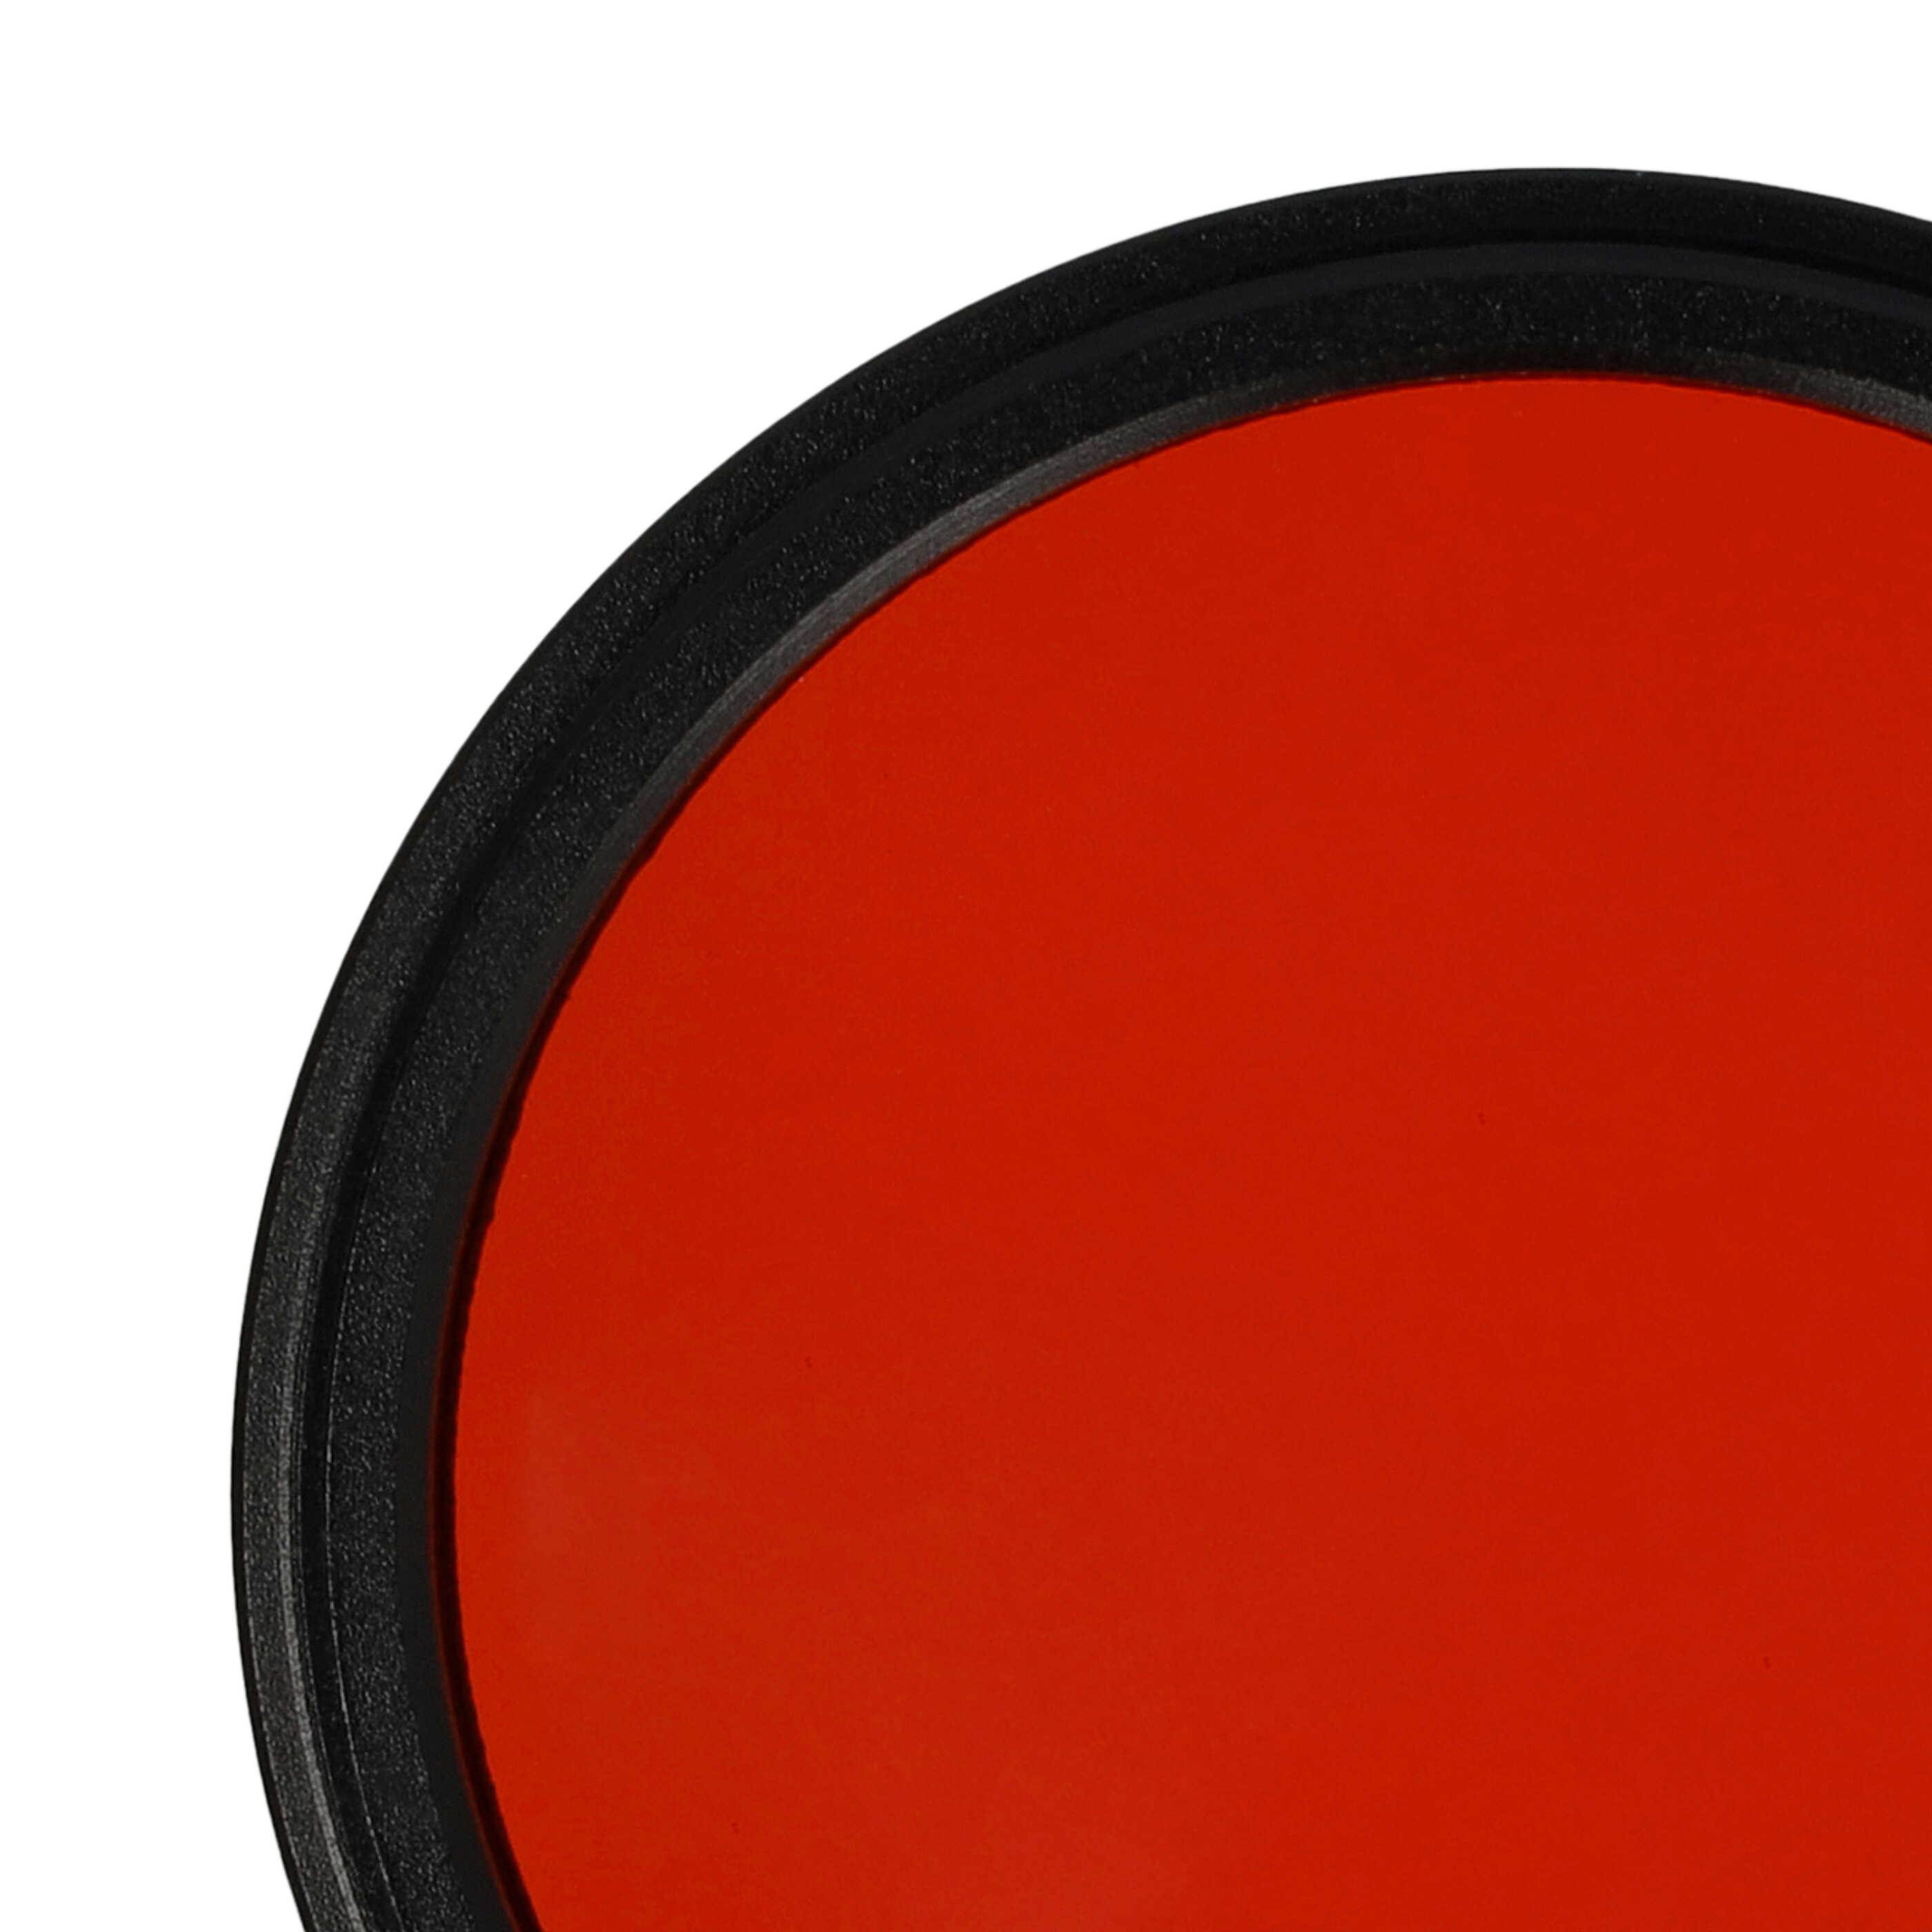 Farbfilter orange passend für Kamera Objektive mit 43 mm Filtergewinde - Orangefilter